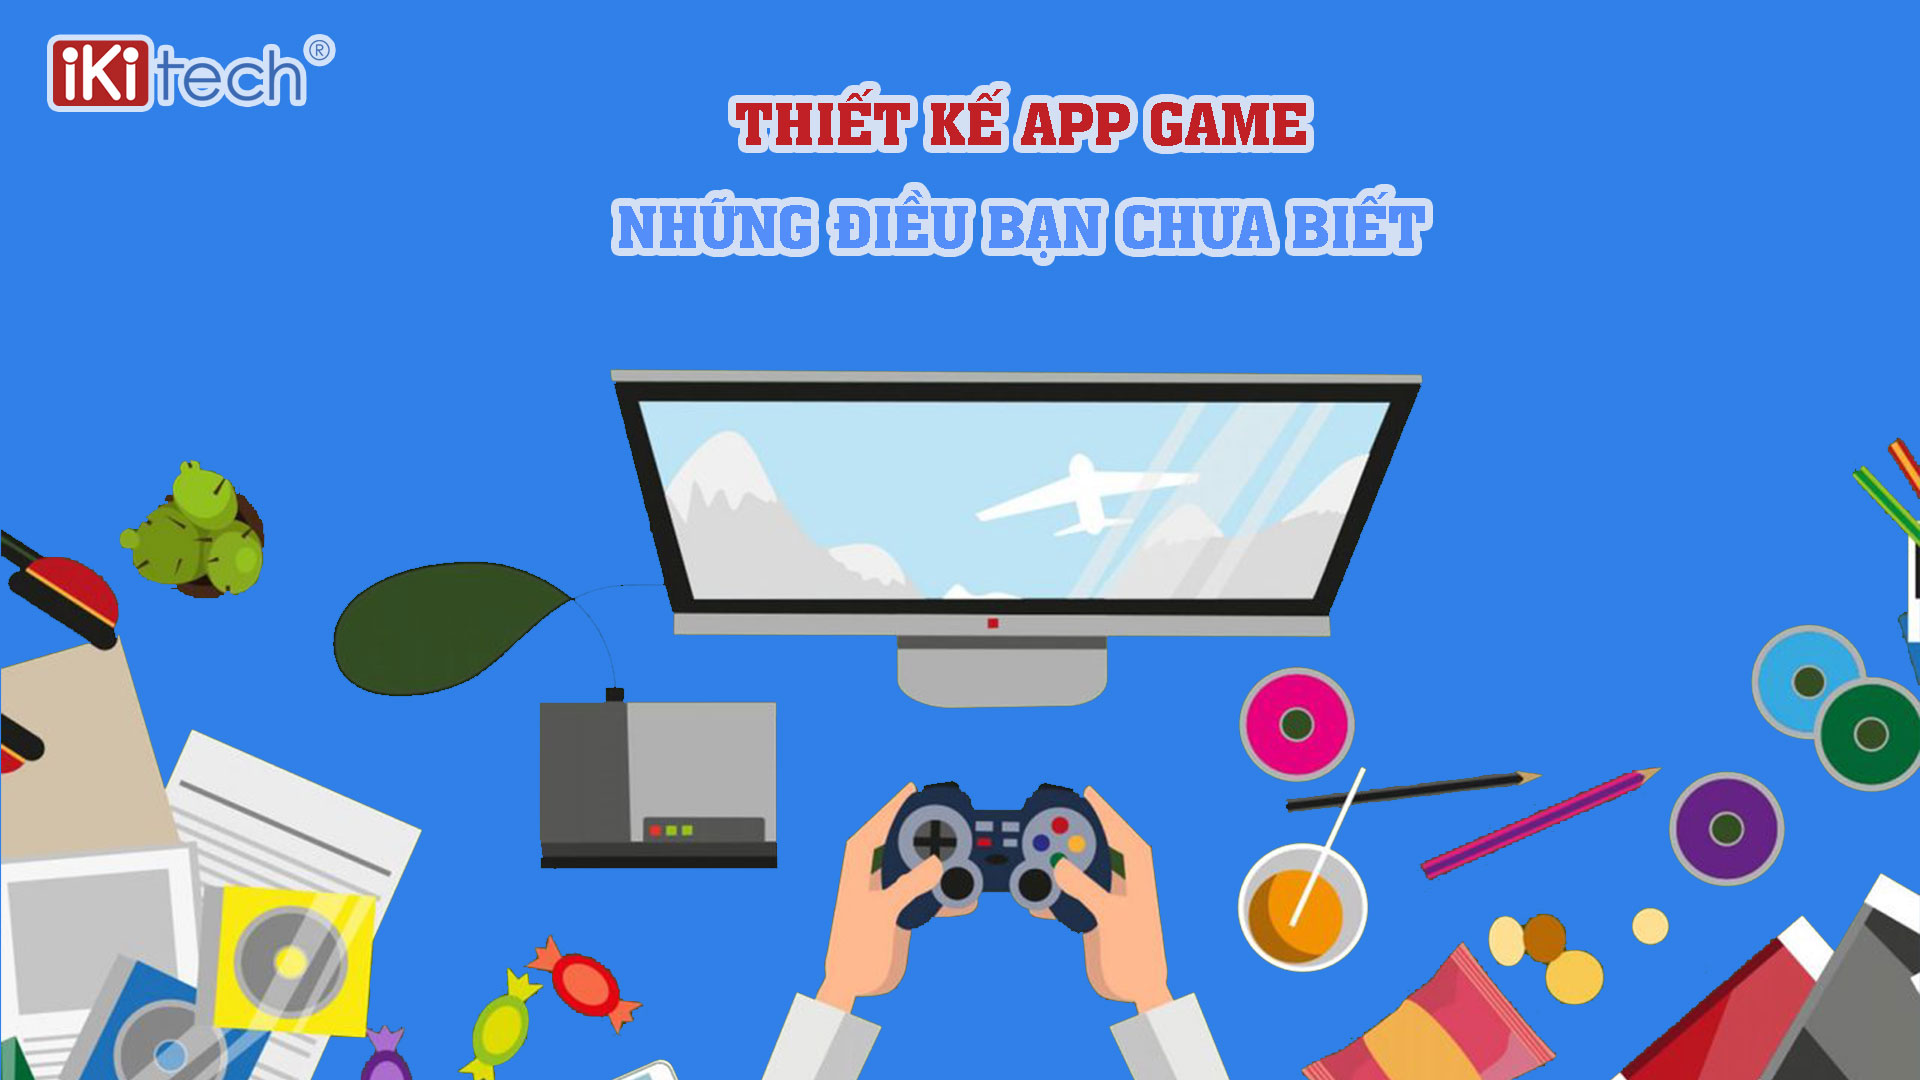 Thiết kế app Game – Những điều bạn chưa biết